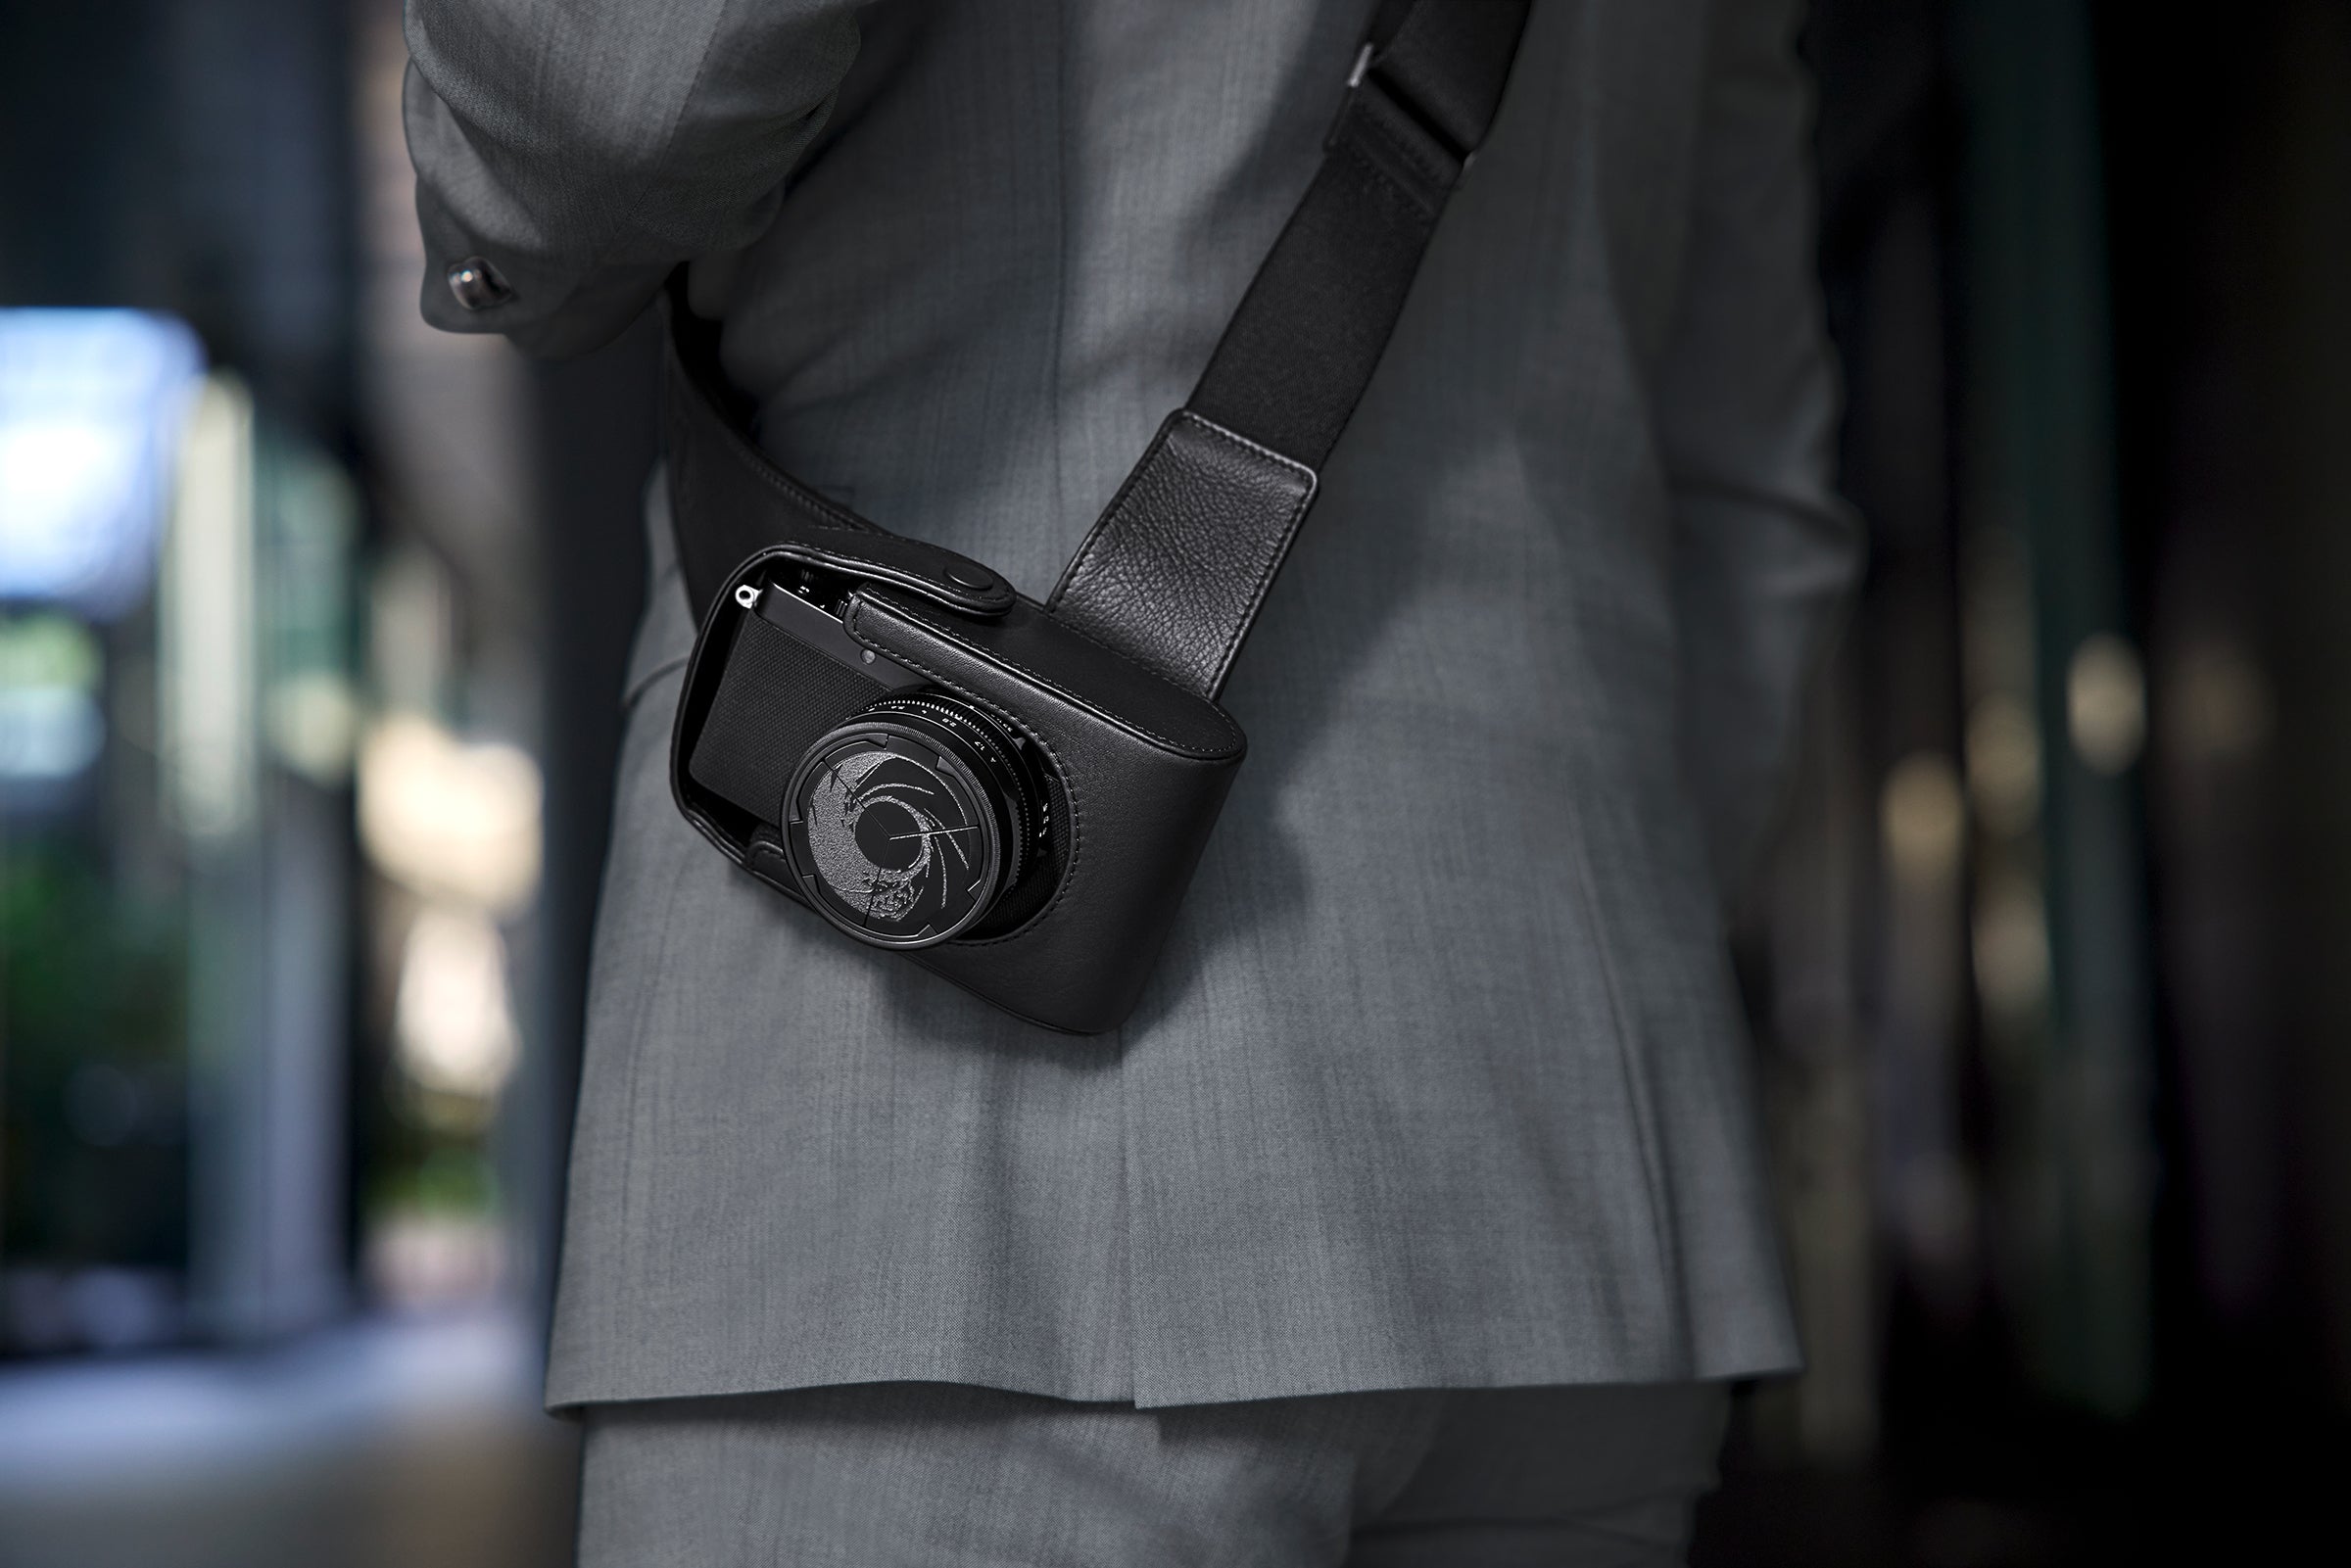 Leica ra mắt máy ảnh D-Lux 7 phiên bản 007 Edition đặc biệt kỷ niệm 60 năm điệp viên James Bond